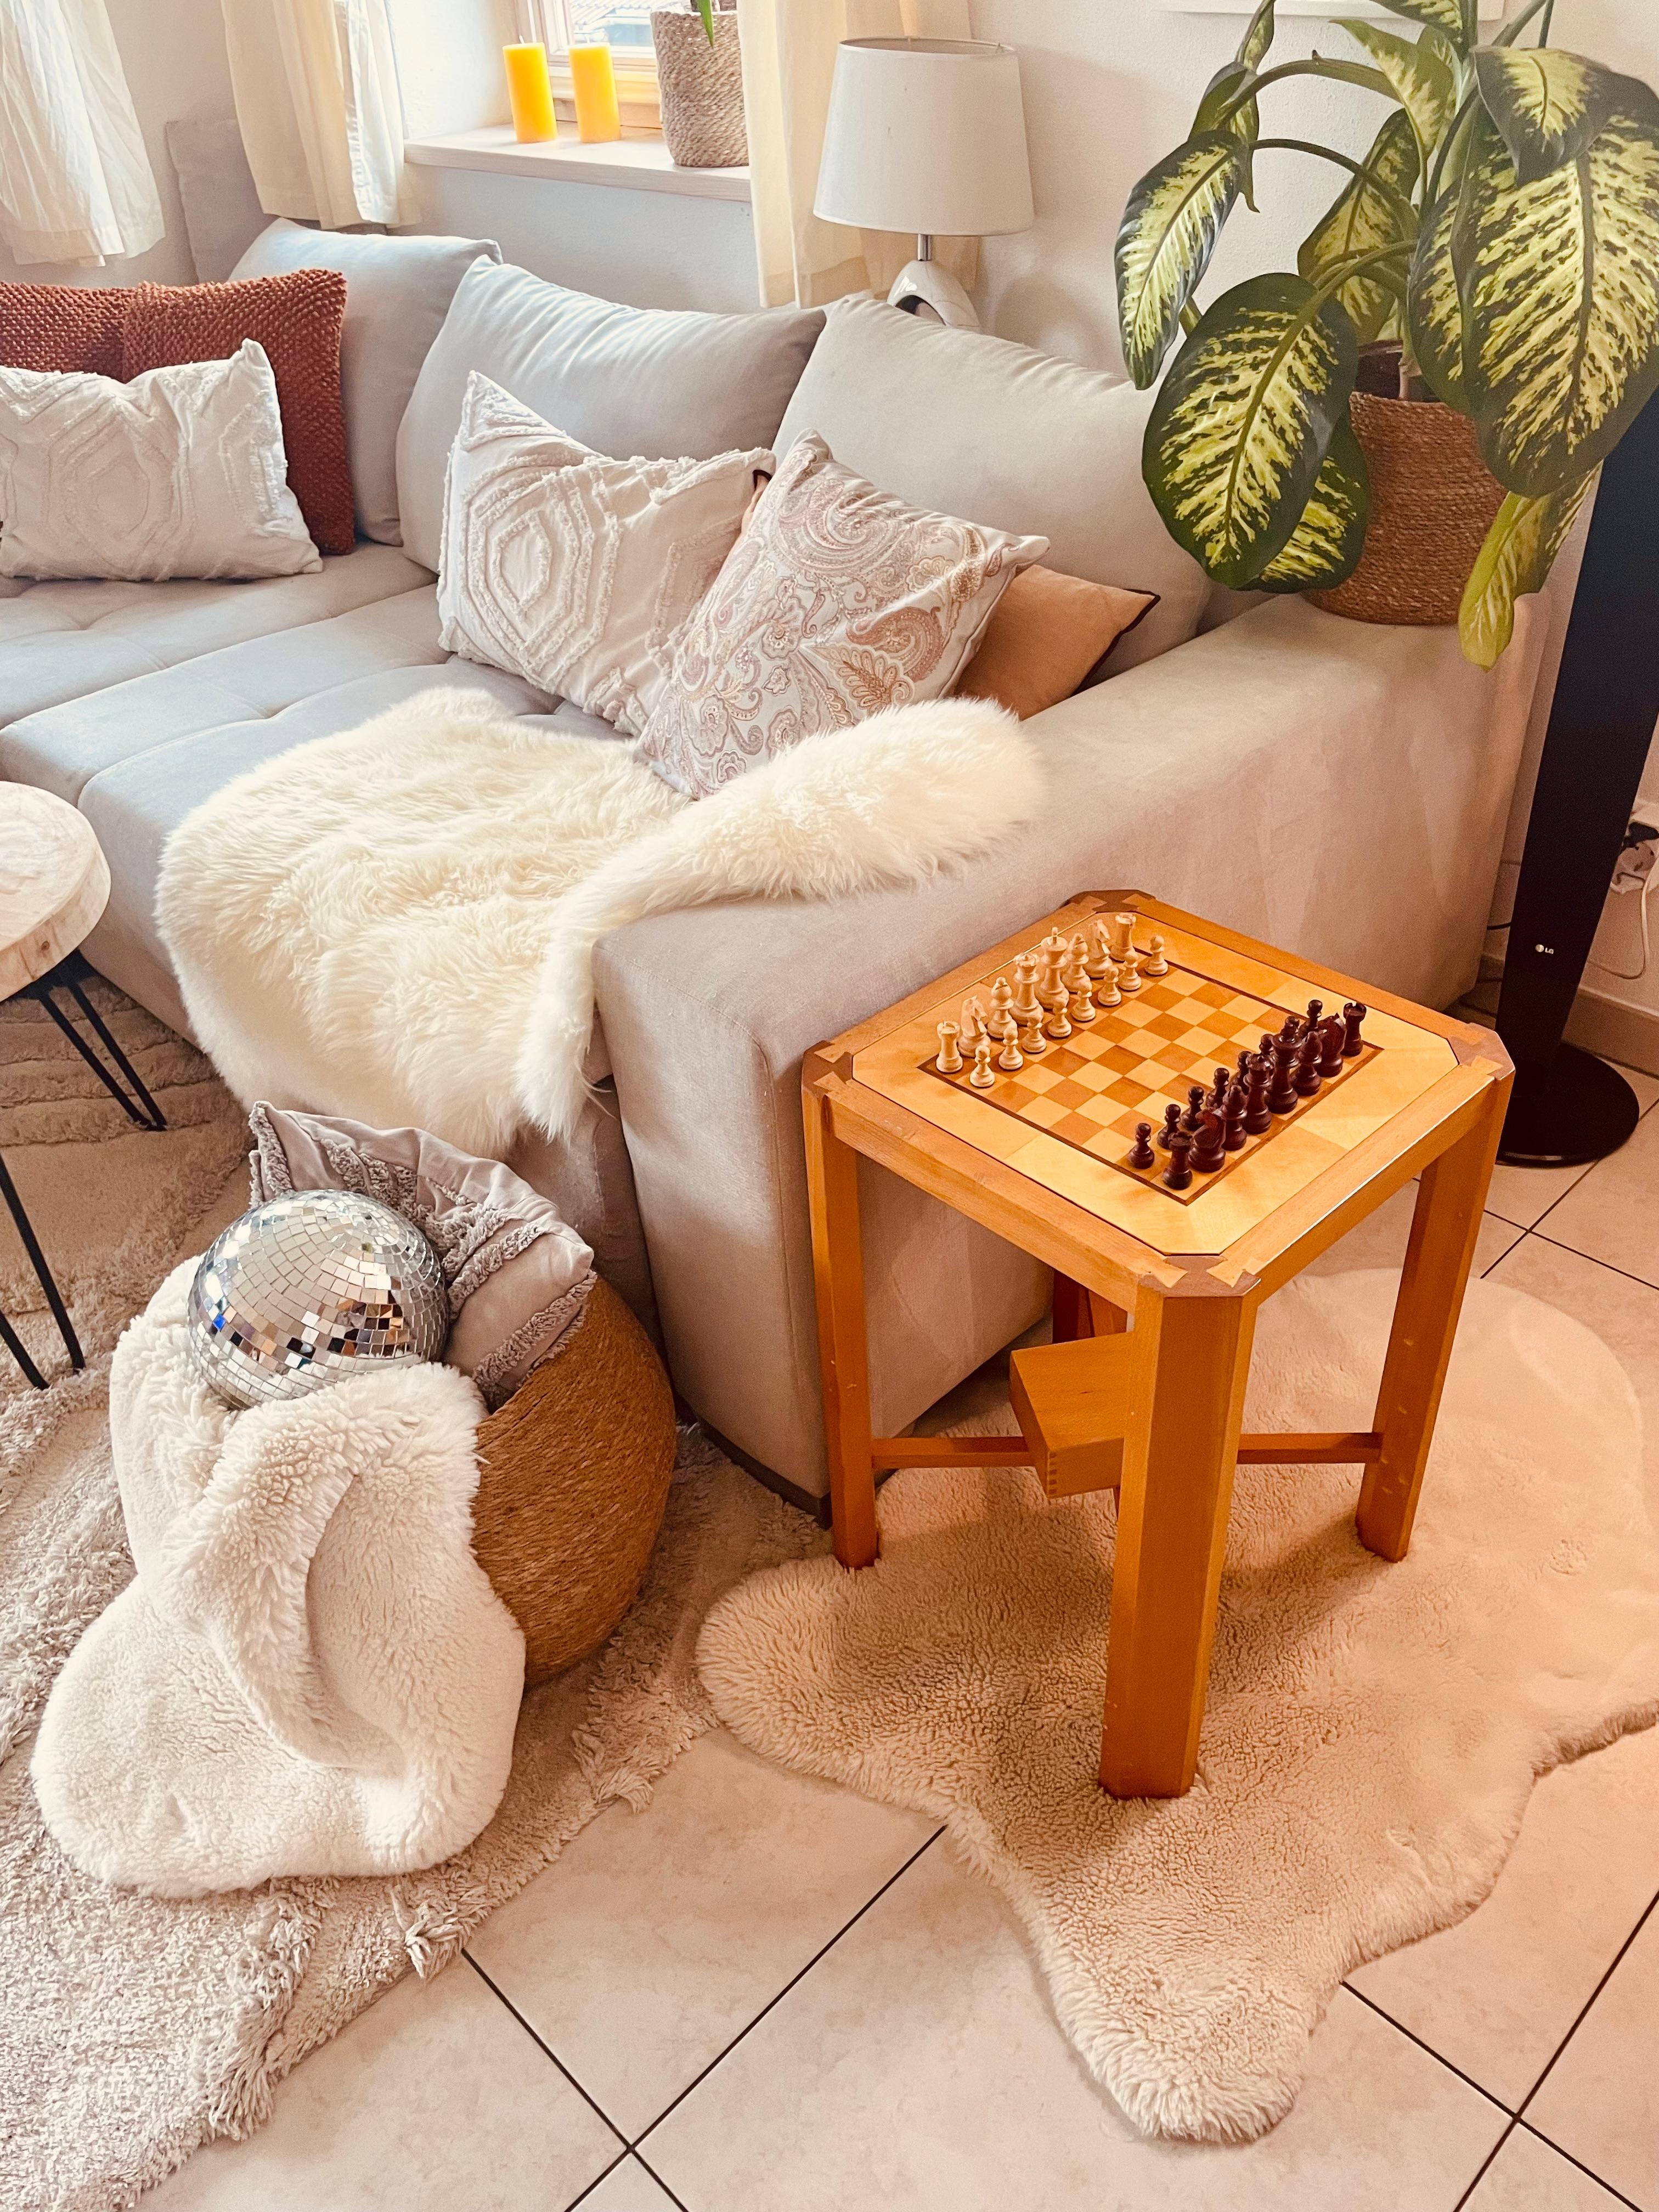 Eine Partie Schach bitte. #vintagevibes  #selfmade #diy #schach #wohnzimmer #couchstyle #lieblingsplatz 